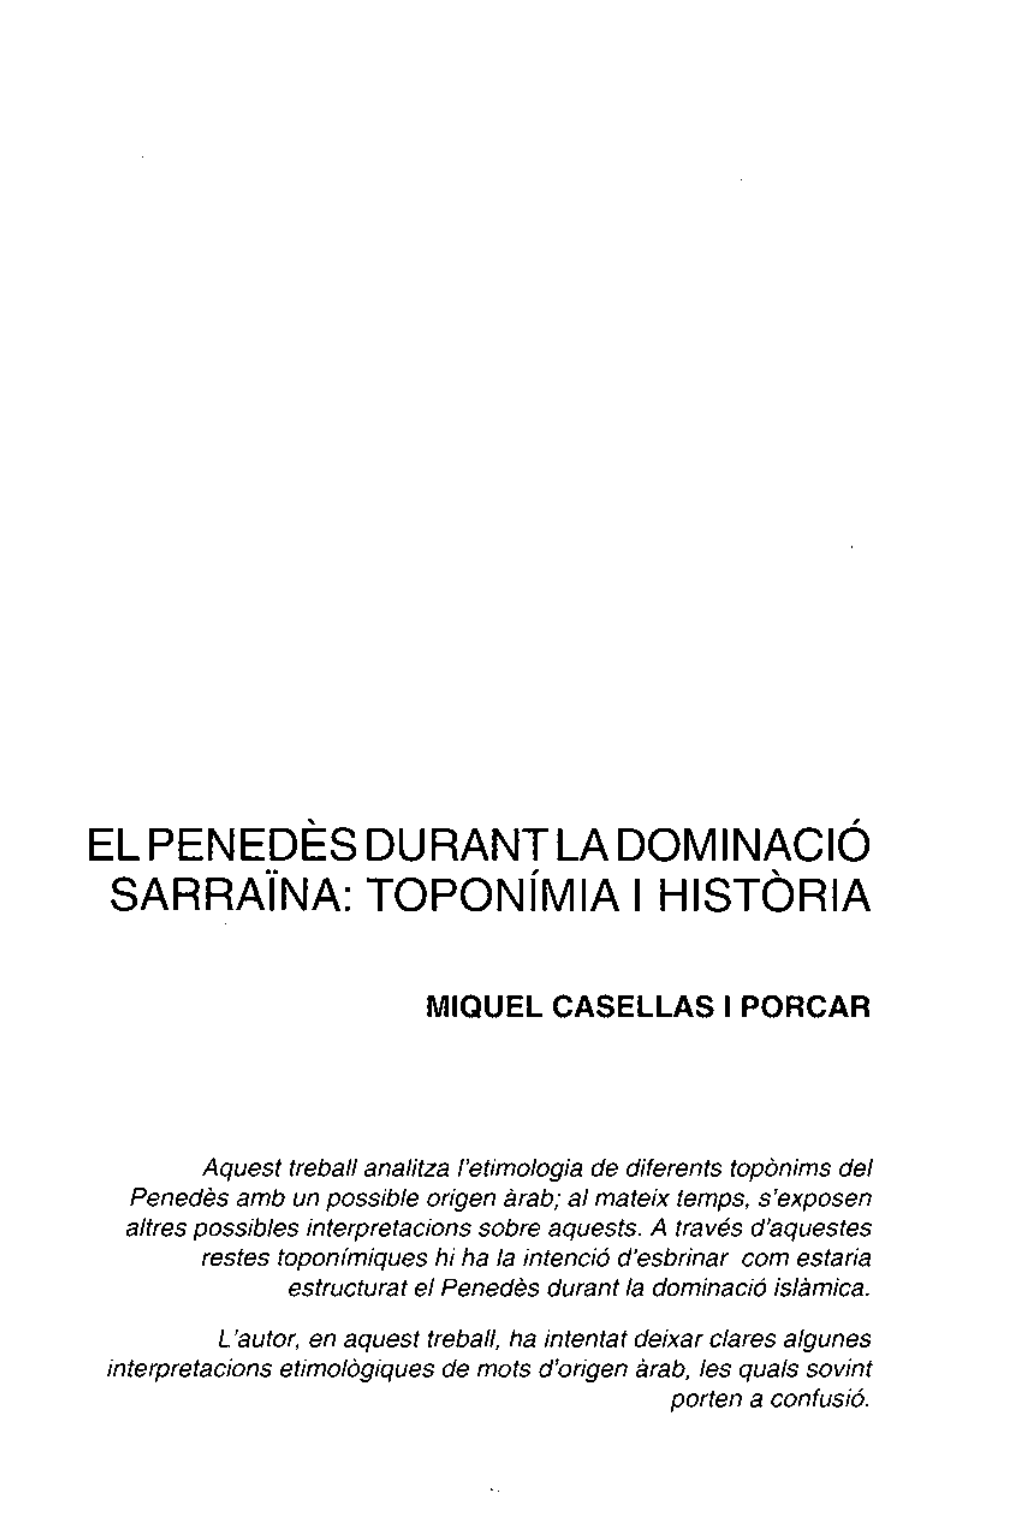 El Penedes Durantladominacio Sarraina: Topon~Mia I Historia